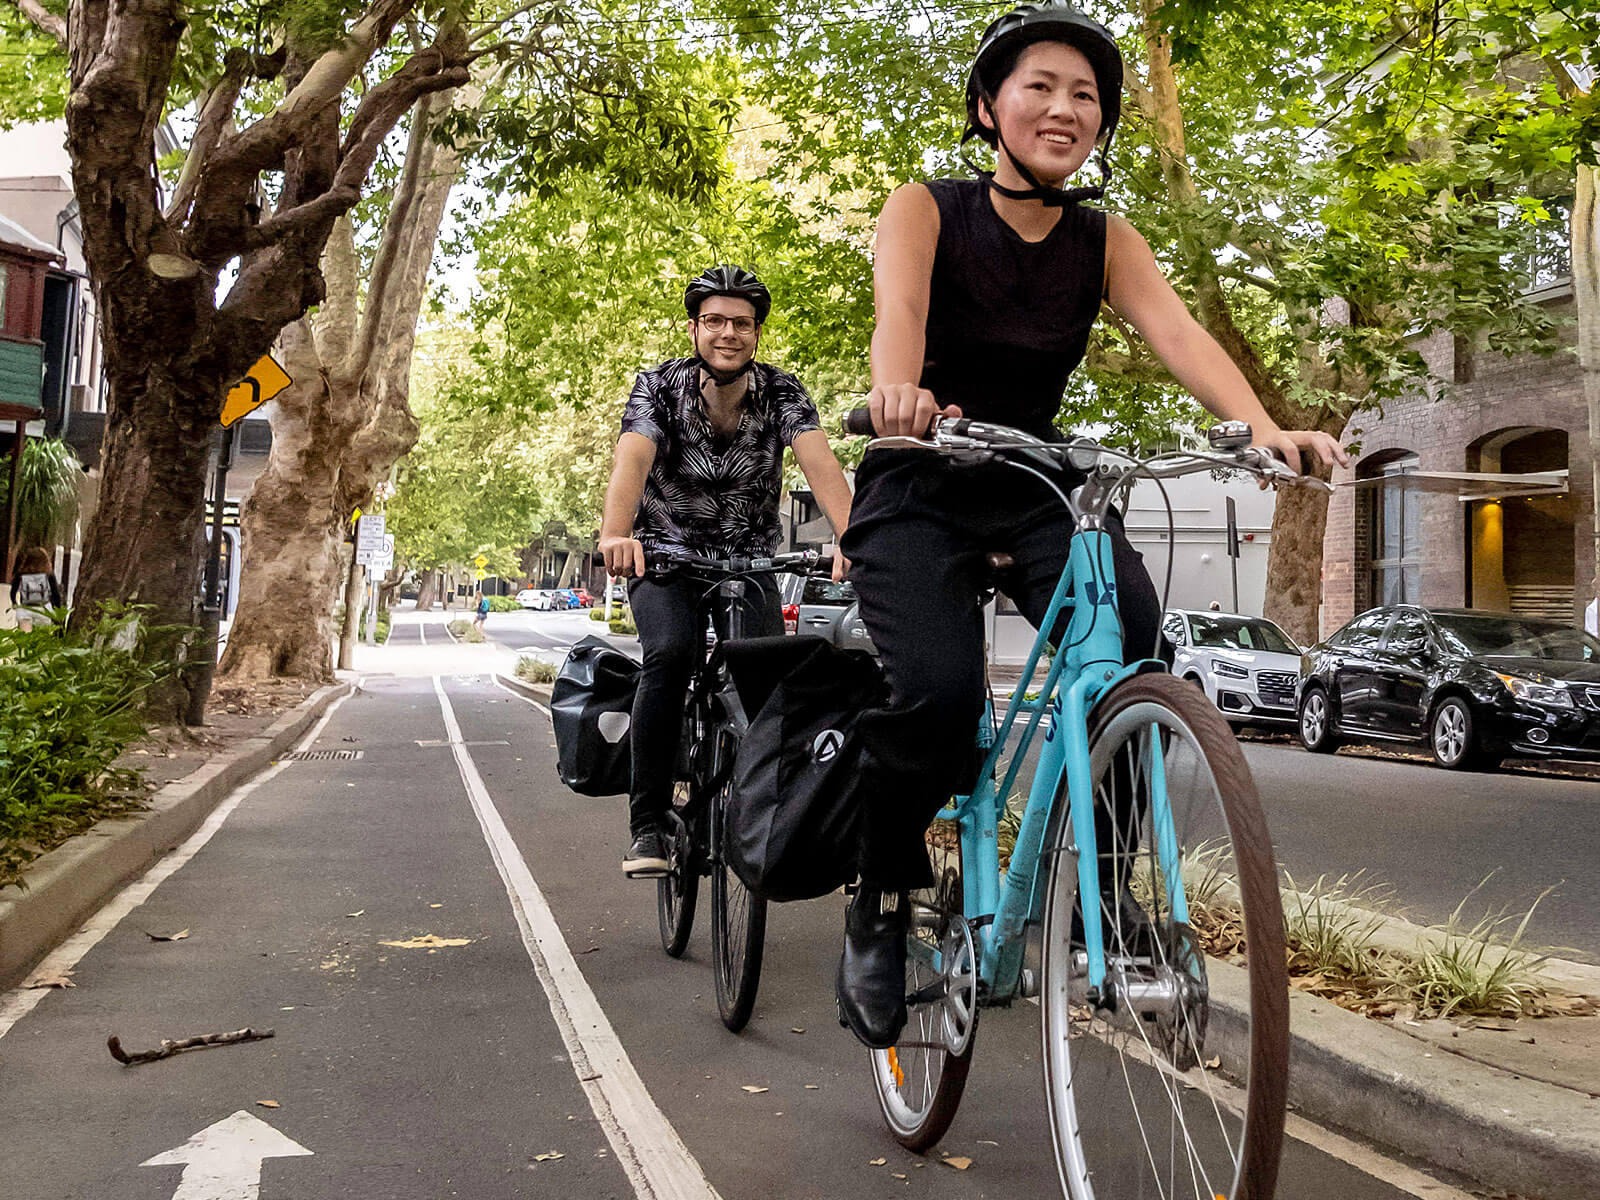 Chọn mua dòng xe đạp thích hợp đi trong thành phố - xedapdanang.vn